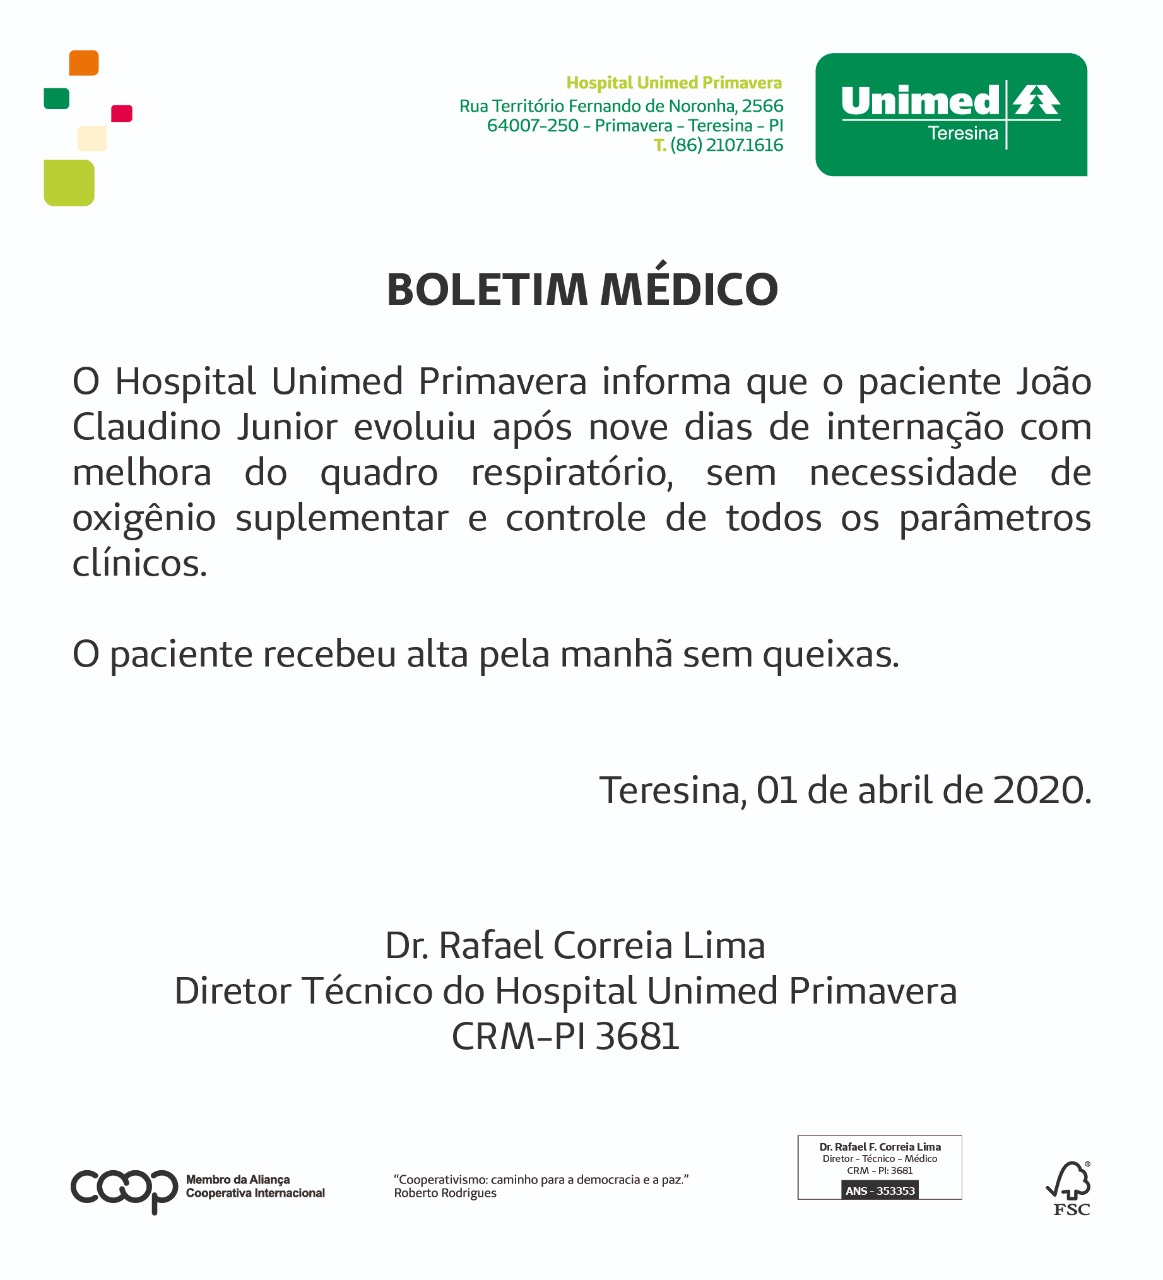 João Claudino Júnior recebe alta e testa negativo para Covid-19